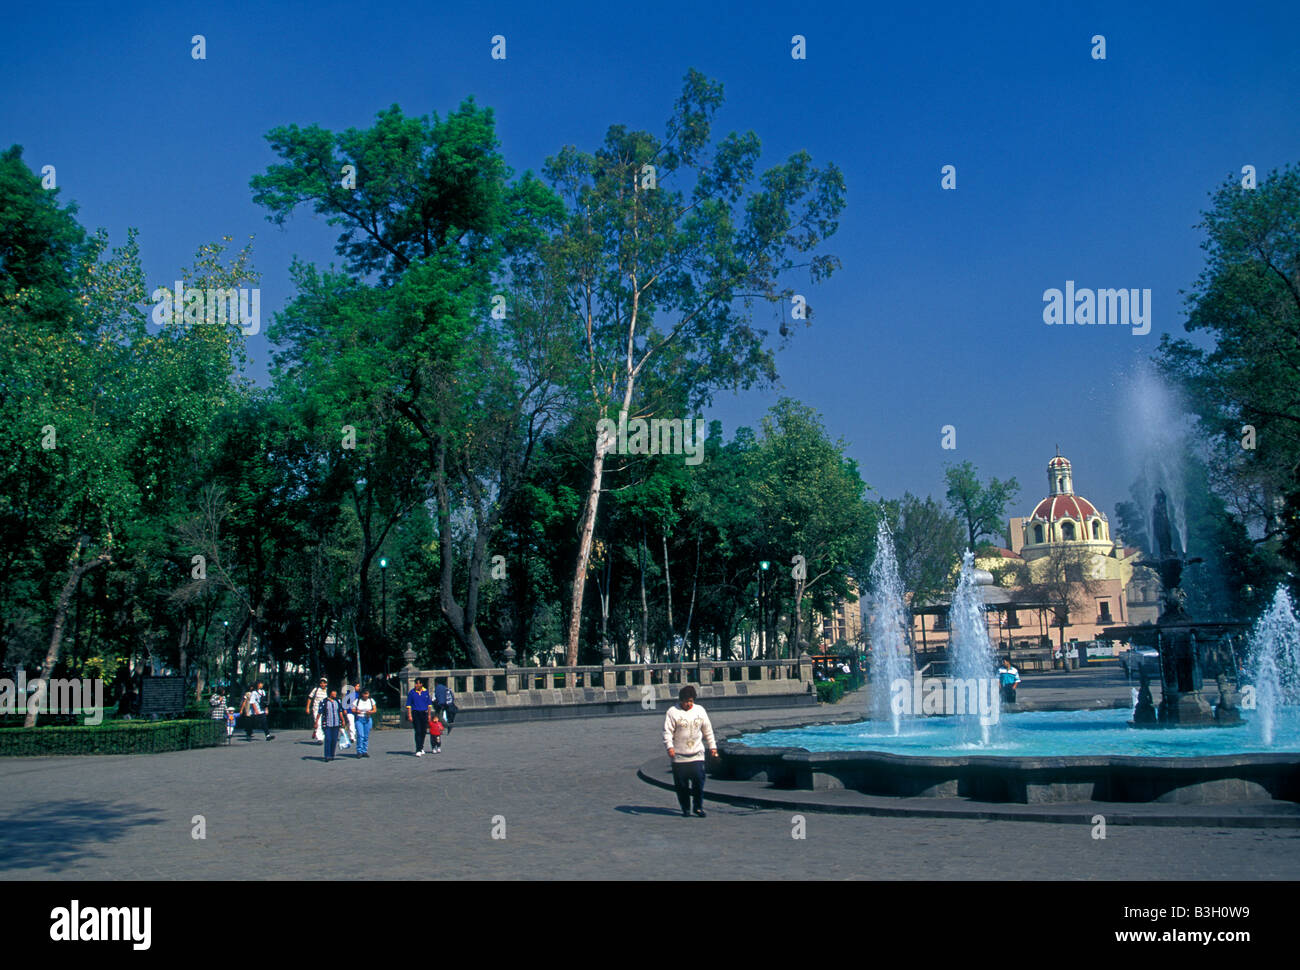 Fontaine à eau, l'eau des fontaines, les Mexicains la marche dans le parc Alameda Central un parc public à Mexico, District Fédéral, Mexique Banque D'Images